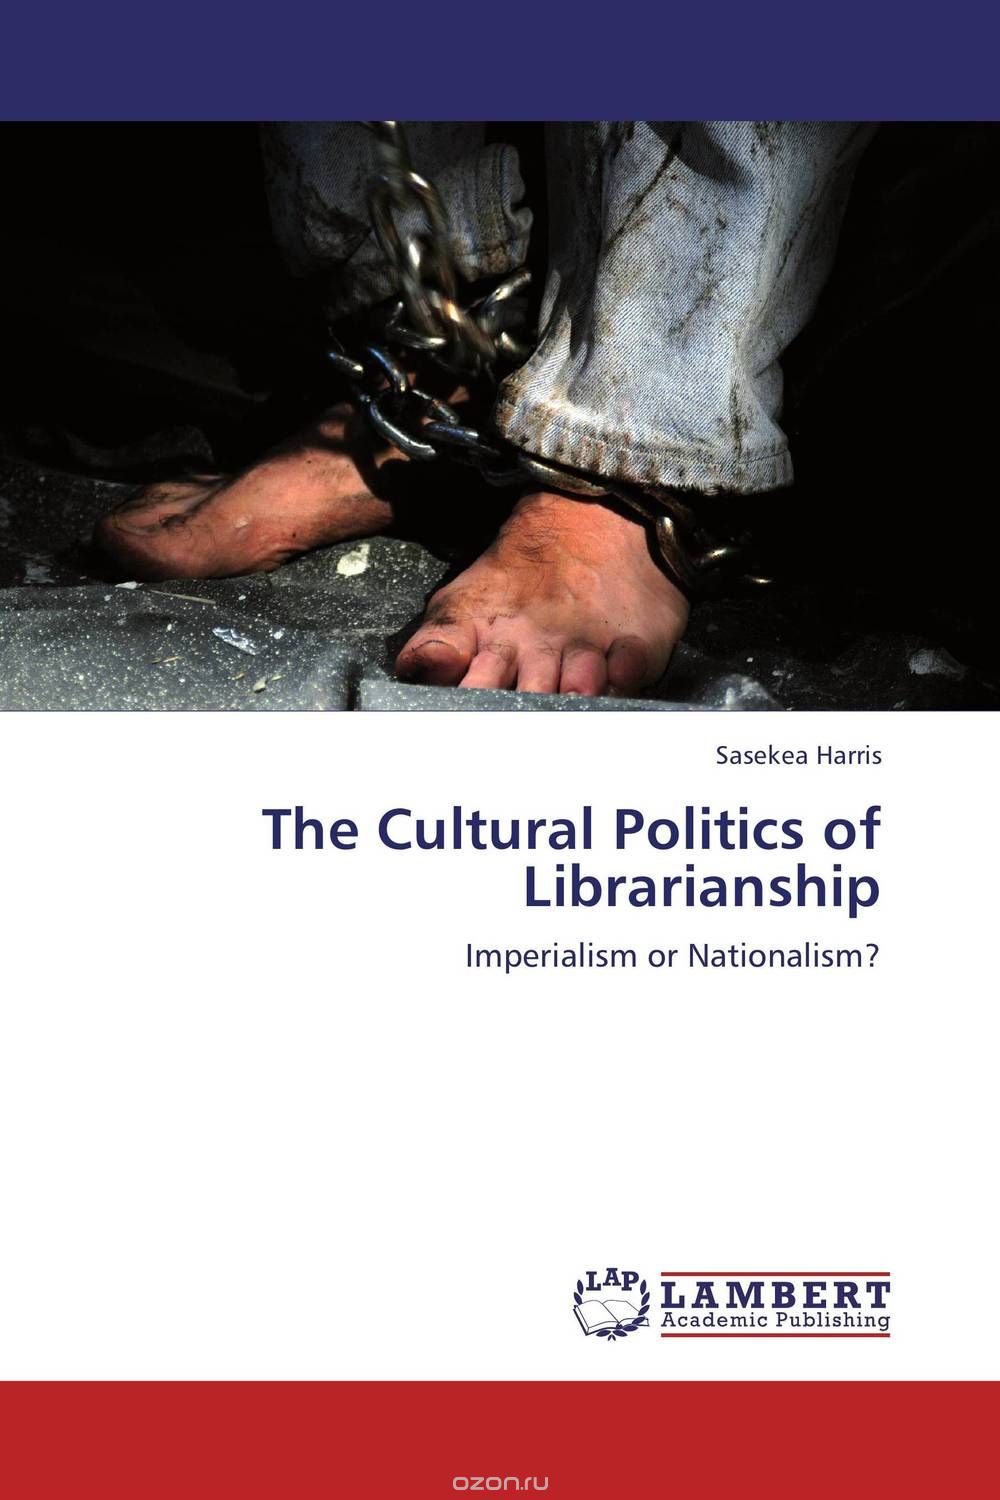 Скачать книгу "The Cultural Politics of Librarianship"